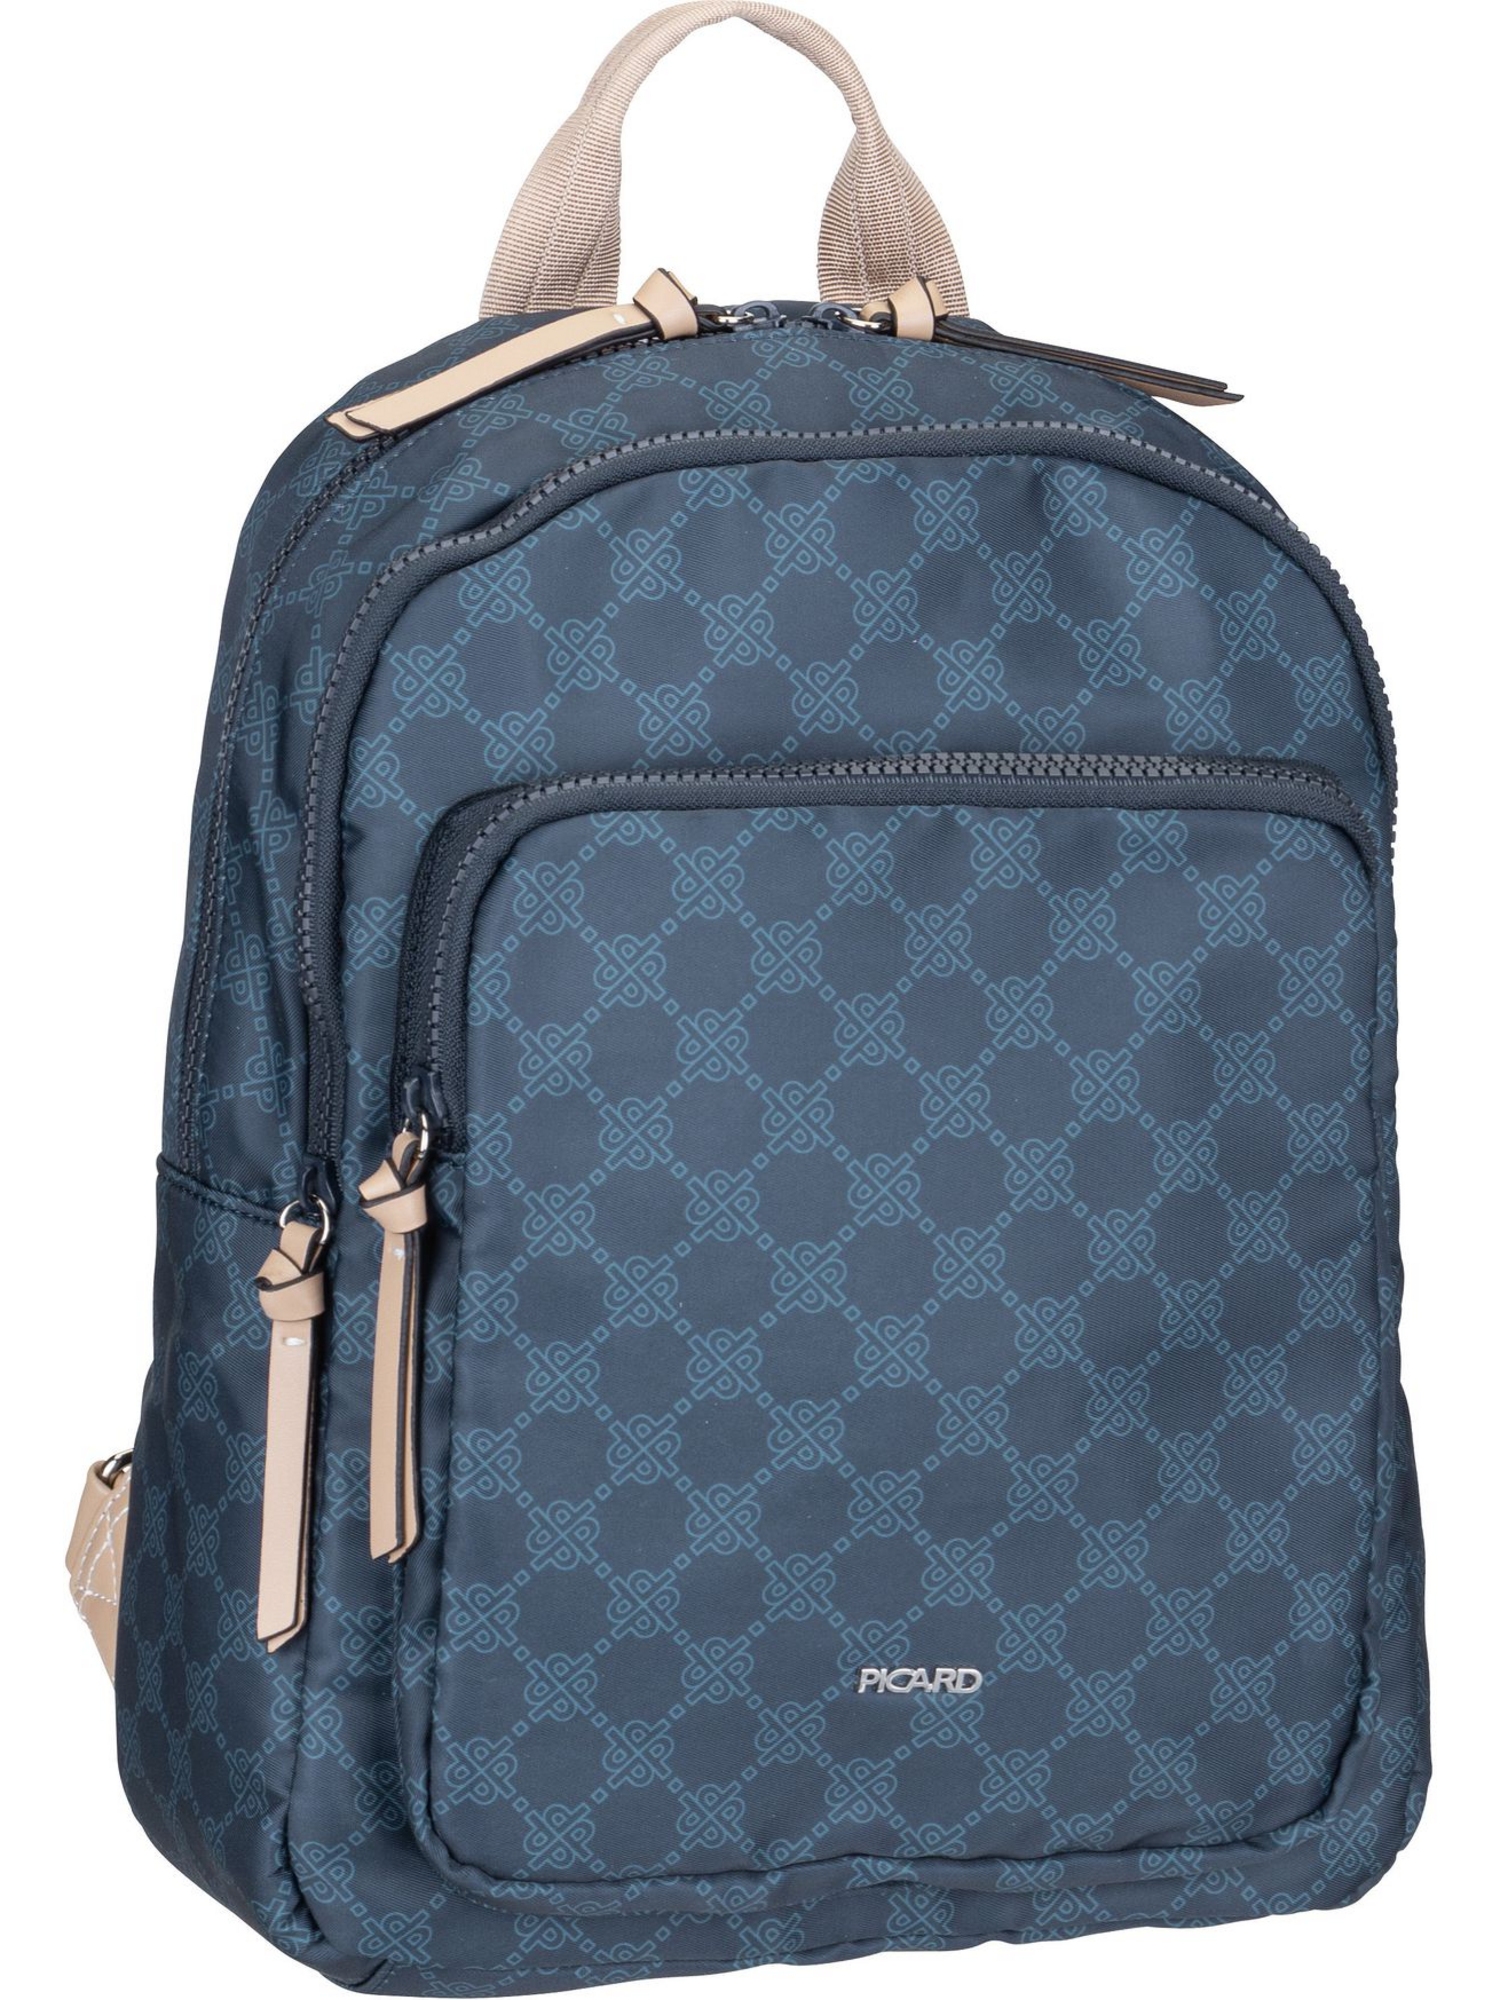 Рюкзак PICARD/Backpack Yeah 3249, темно синий